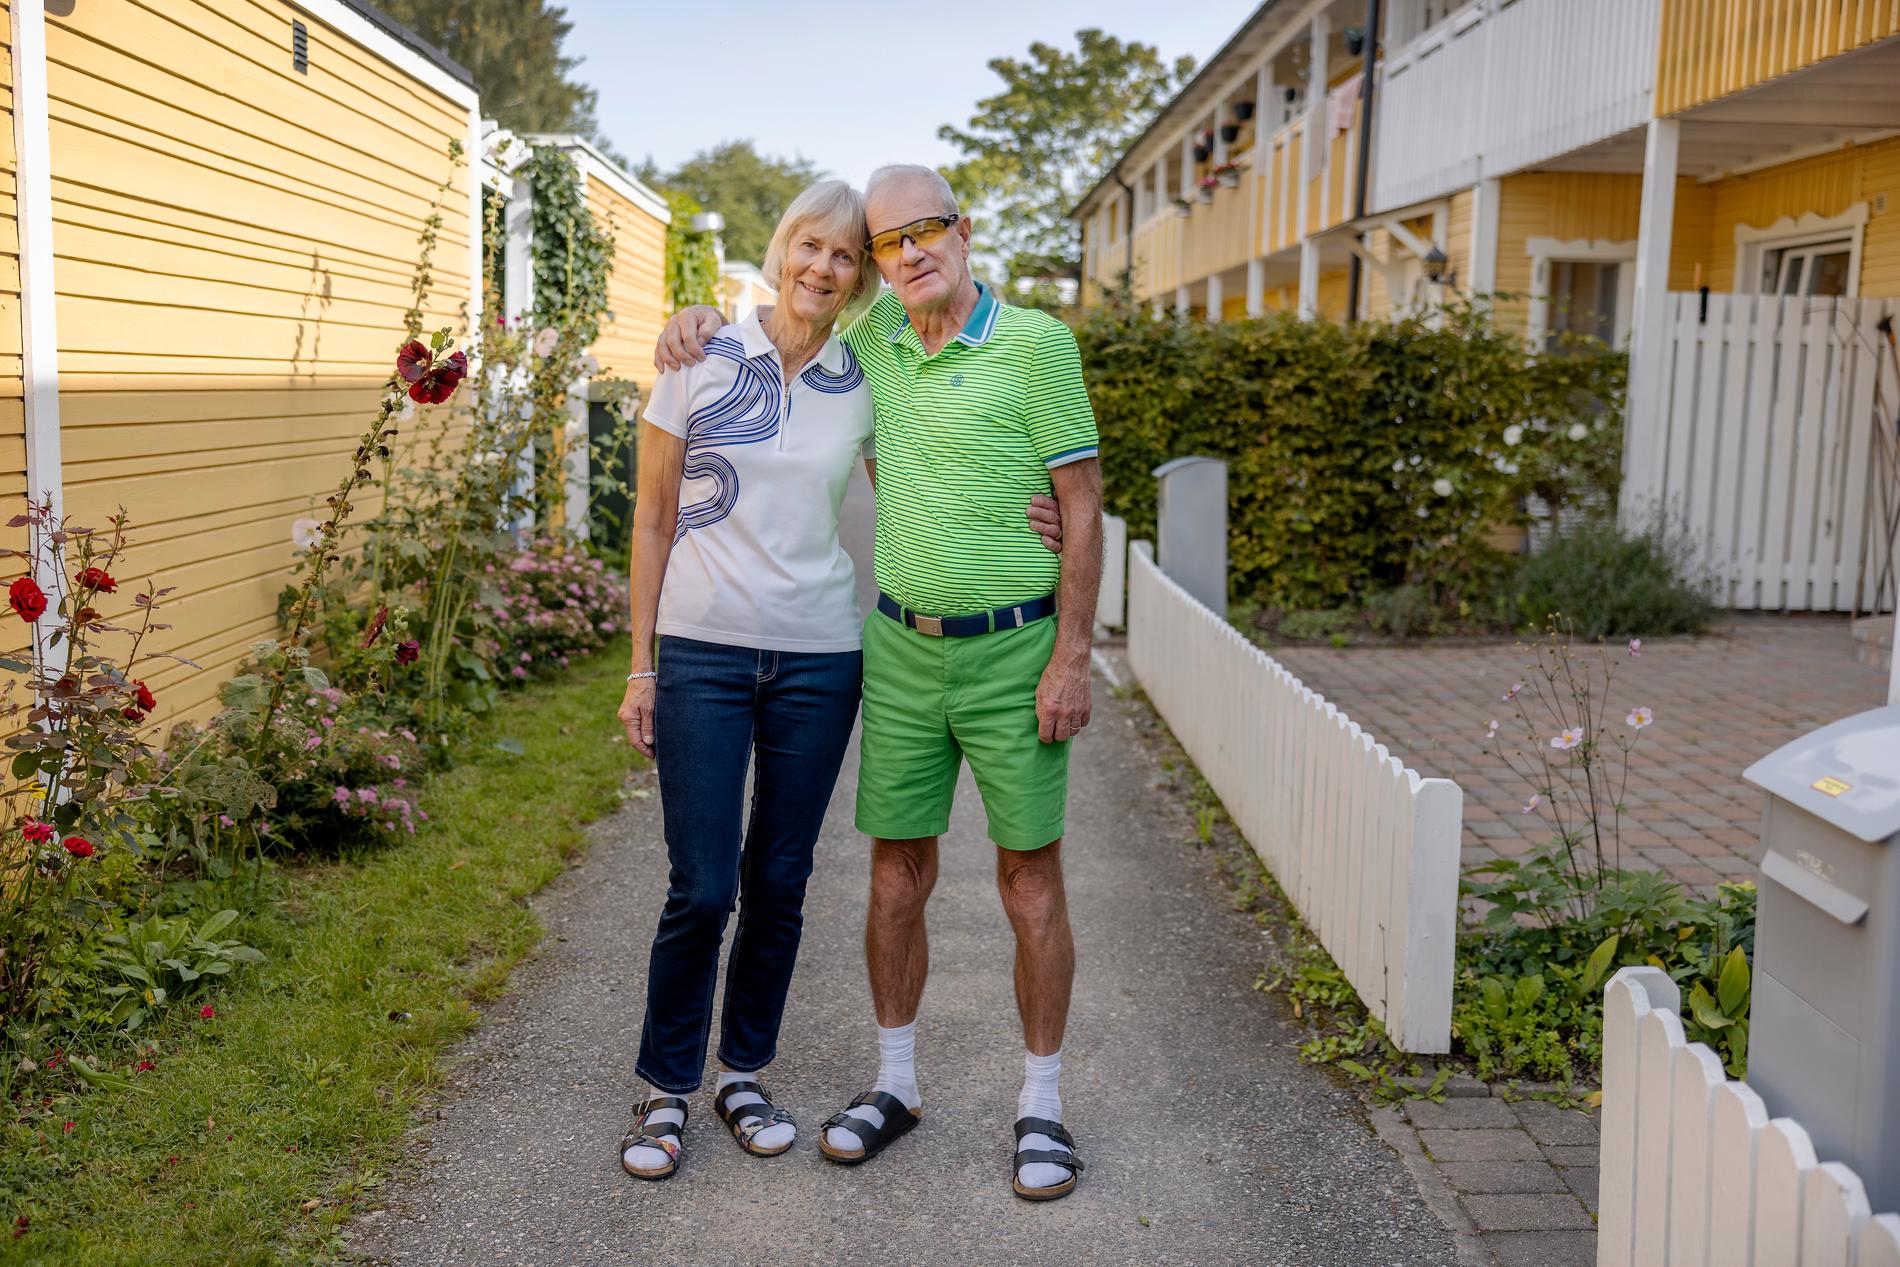 Pierre Dahmén träffades av blixten under en golftävling i Falkenberg. Här med frun Laisa Dahmén.